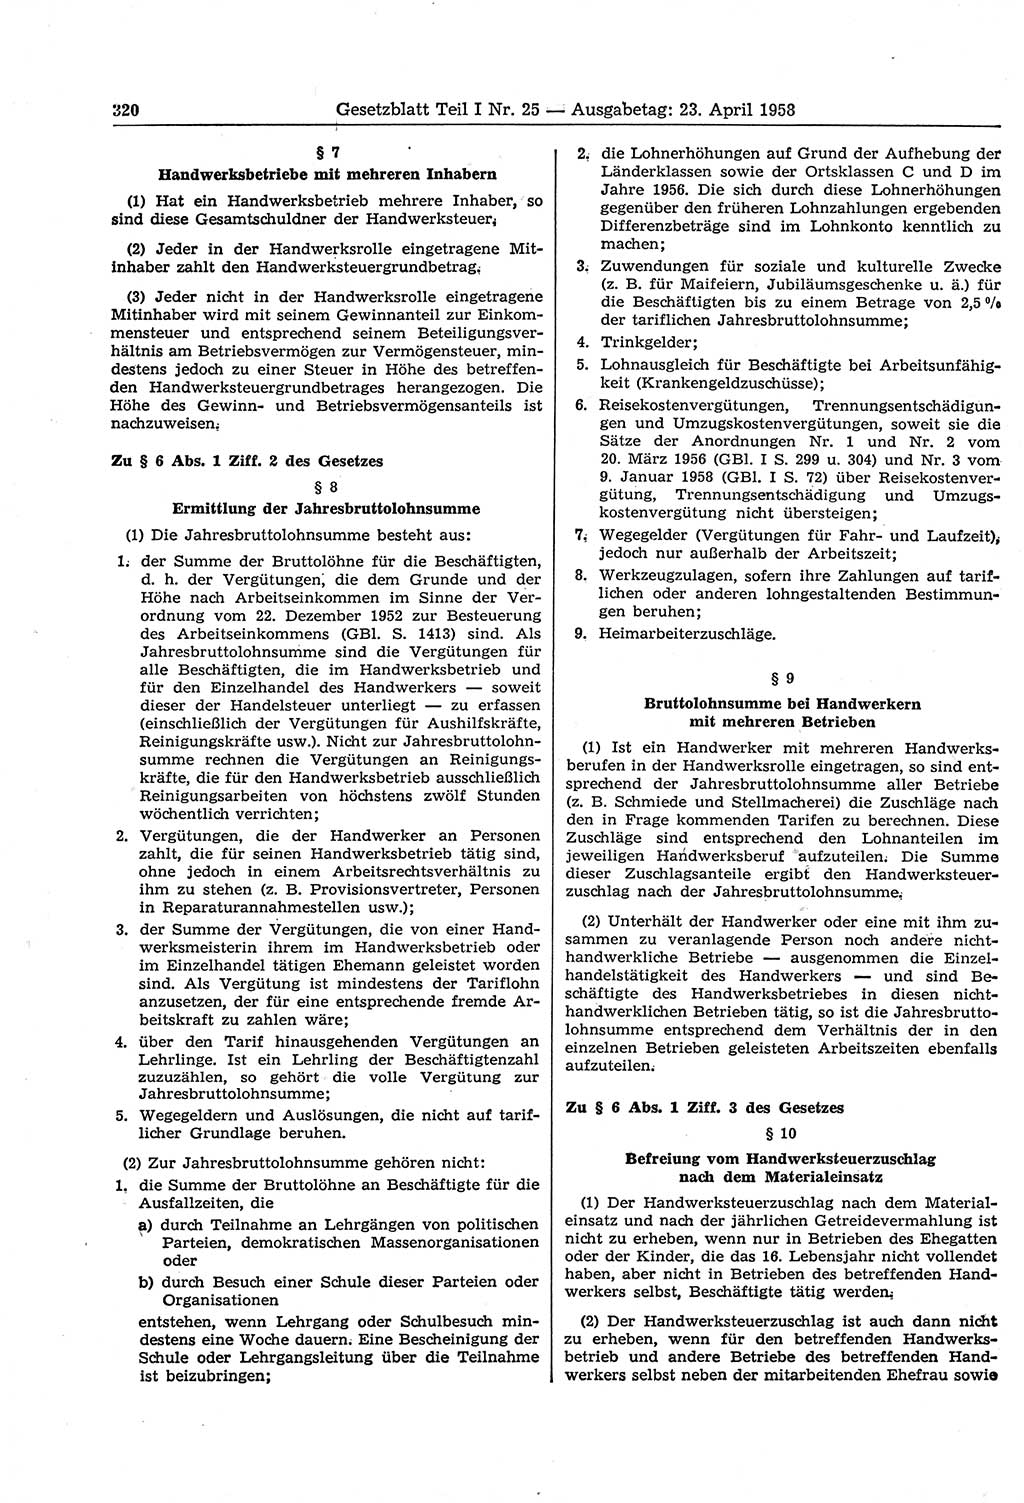 Gesetzblatt (GBl.) der Deutschen Demokratischen Republik (DDR) Teil Ⅰ 1958, Seite 320 (GBl. DDR Ⅰ 1958, S. 320)